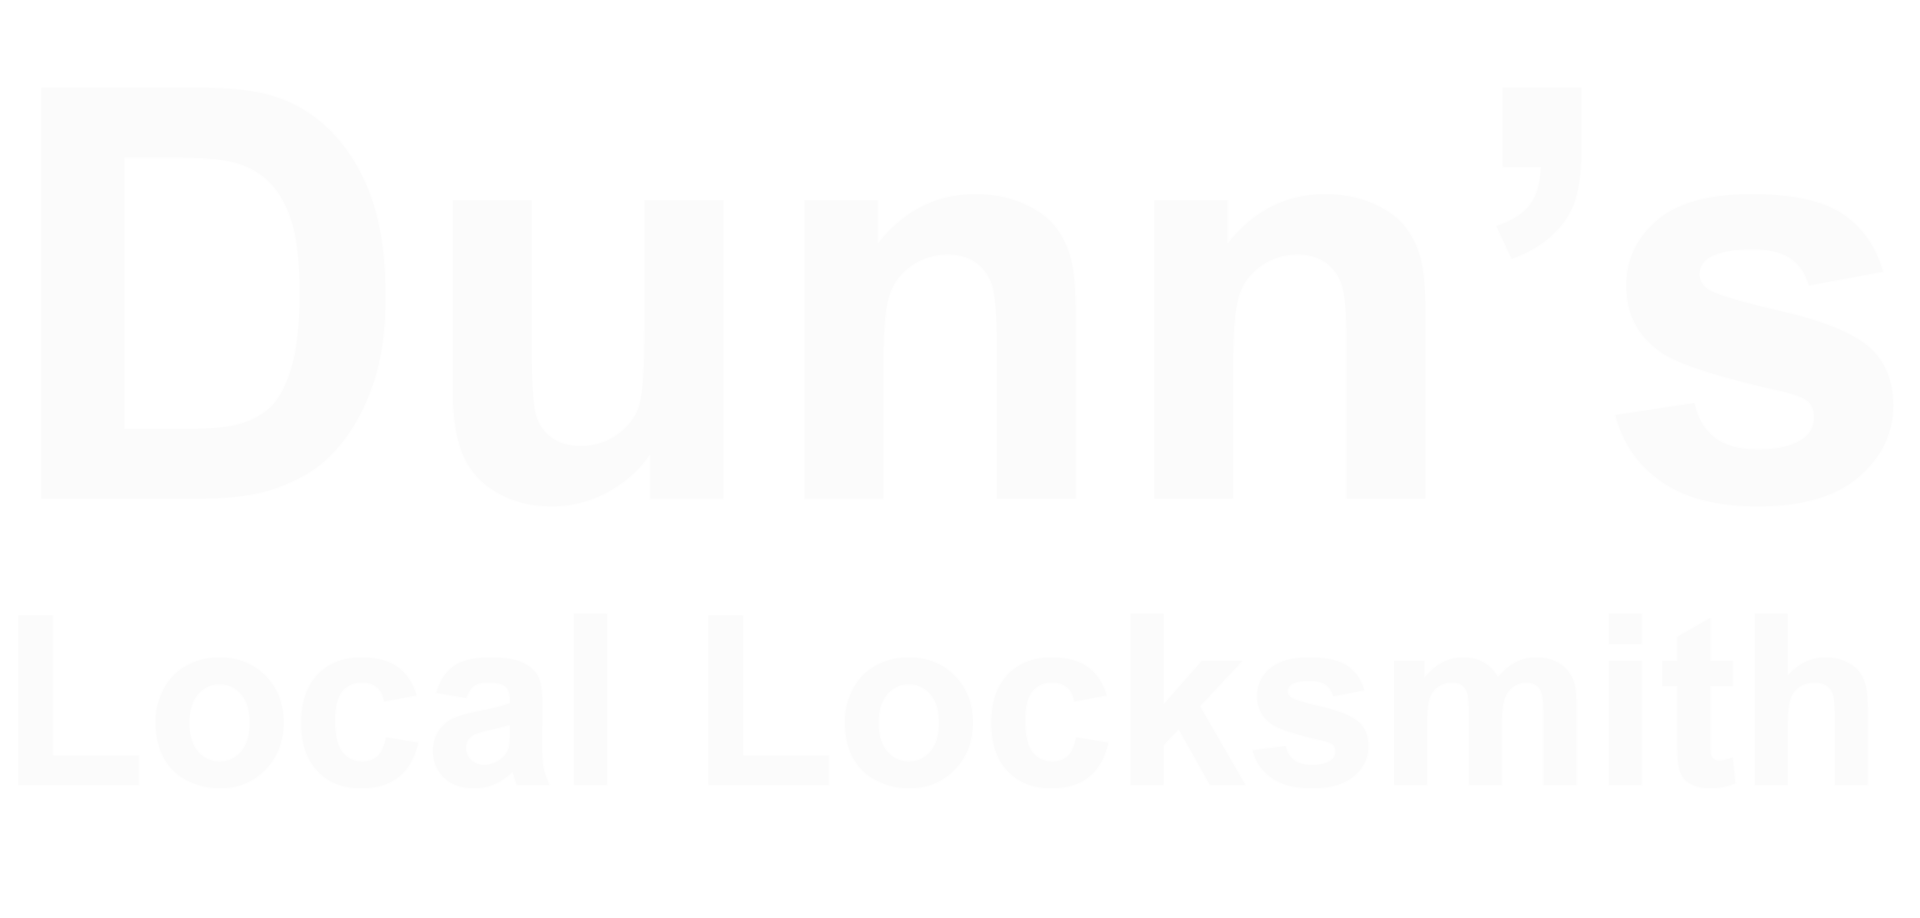 Locksmith_logo